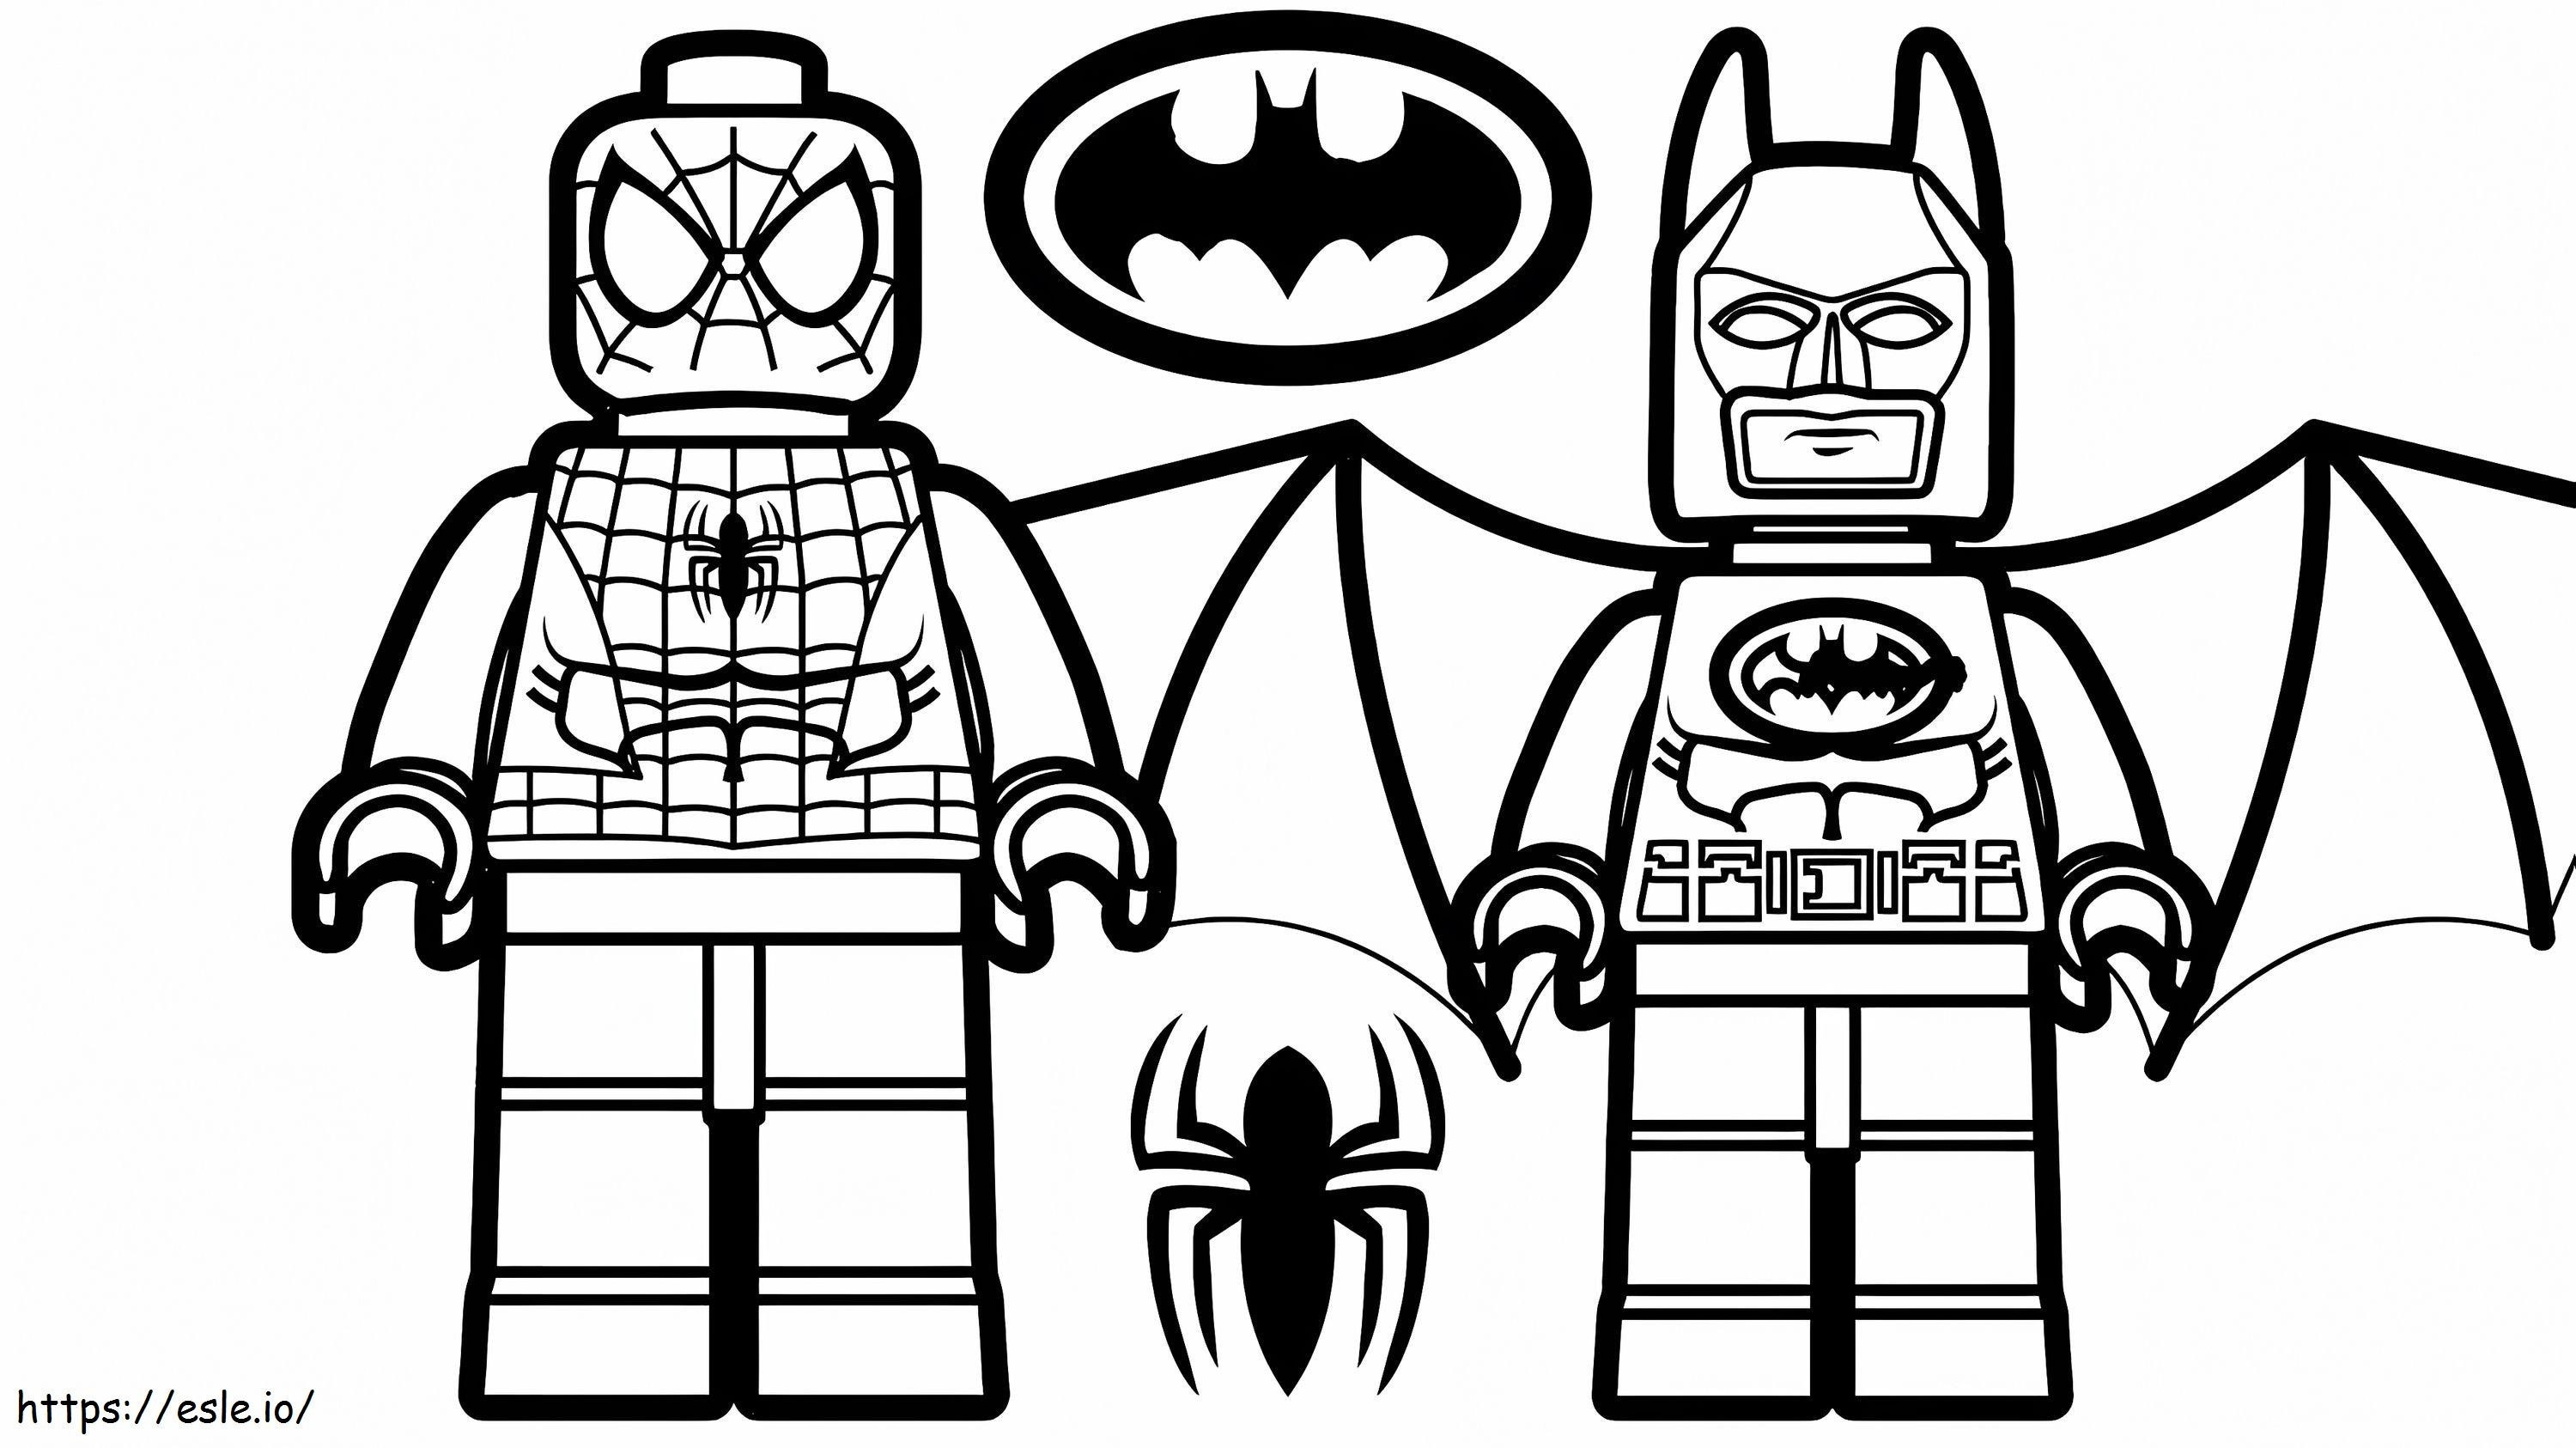 1532141570 Lego Spiderman és Lego Batman A4 E1600348956736 kifestő